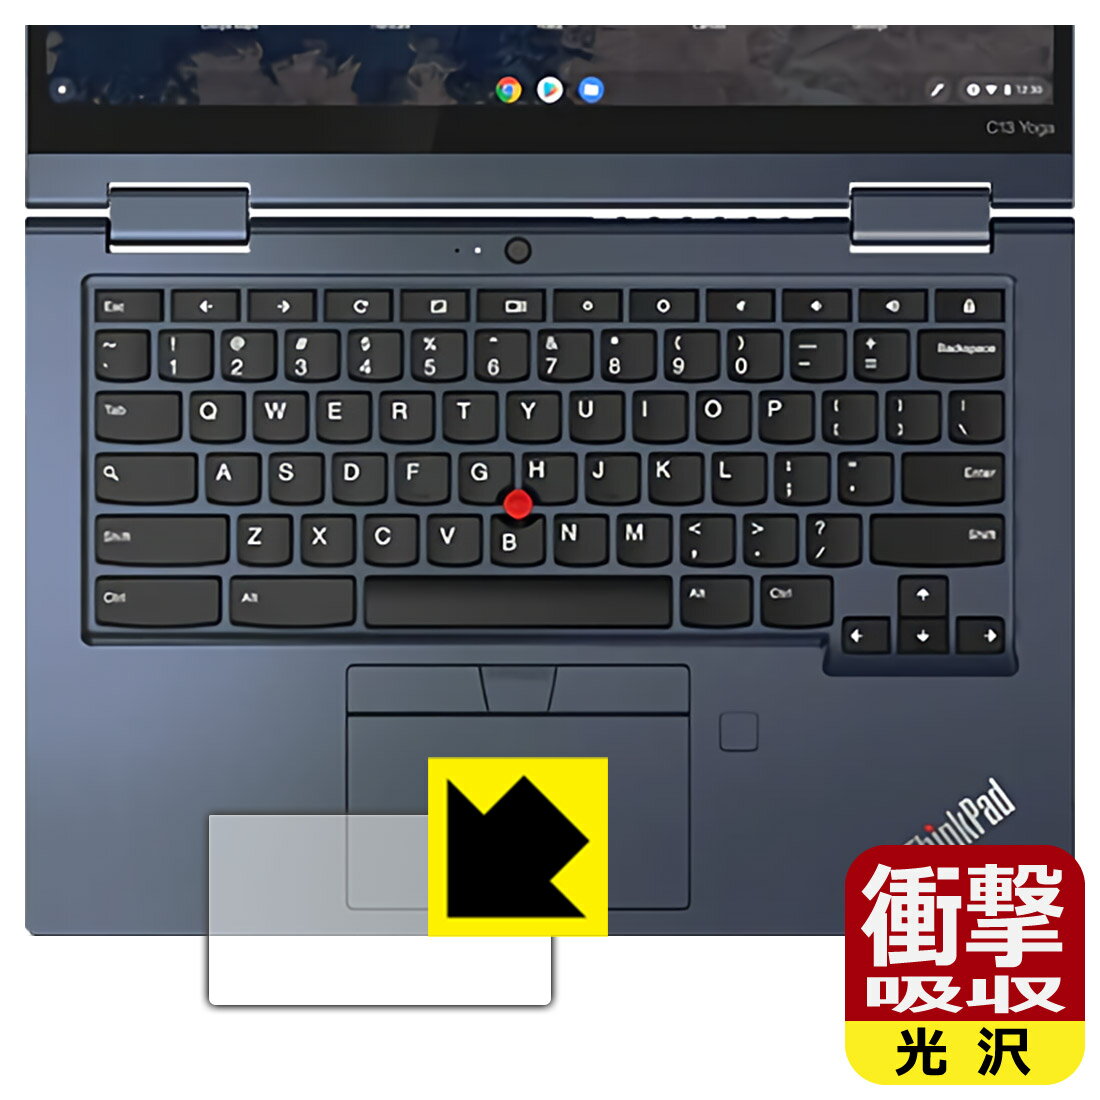 衝撃吸収【光沢】保護フィルム ThinkPad C13 Yoga Chromebook Gen 1 (クリックパッド用) 日本製 自社製造直販